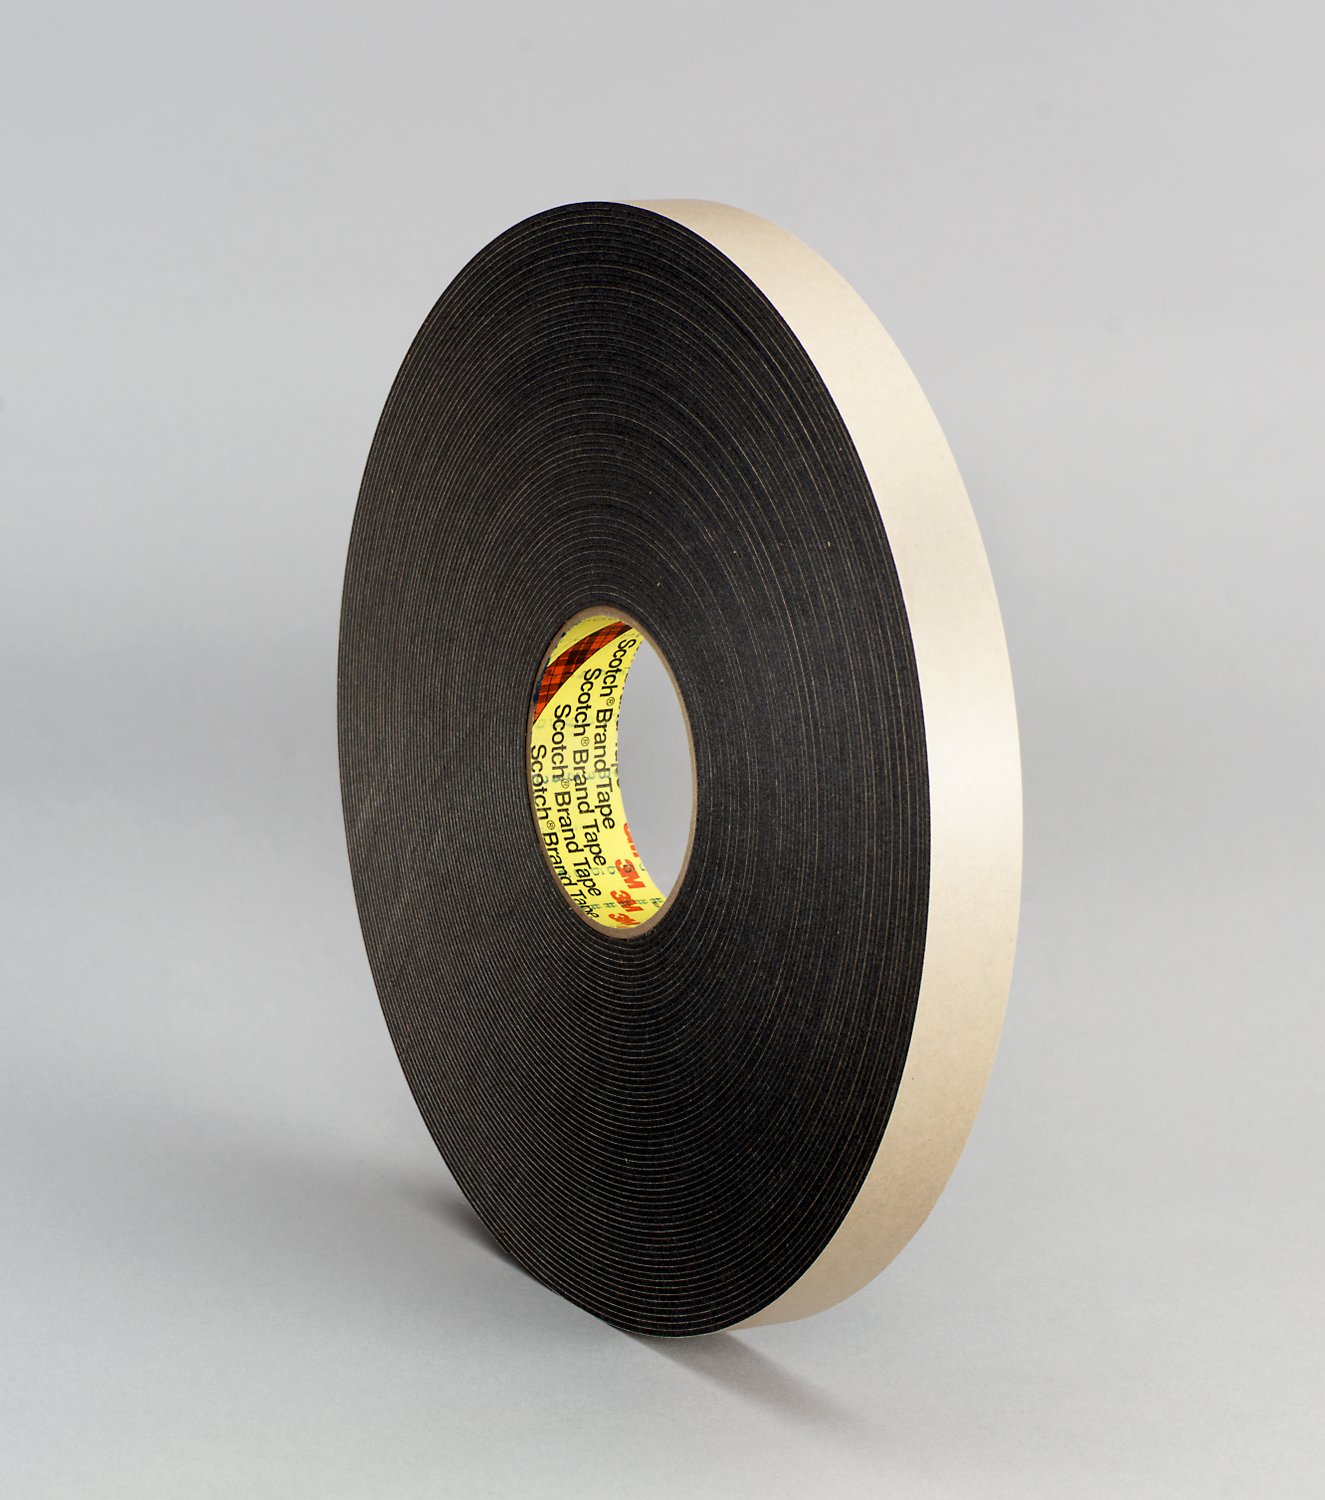 7000123705 - 3M Double Coated Polyethylene Foam Tape 4496B, Black, 1/2 in x 36 yd,
62 mil, 18 rolls per case